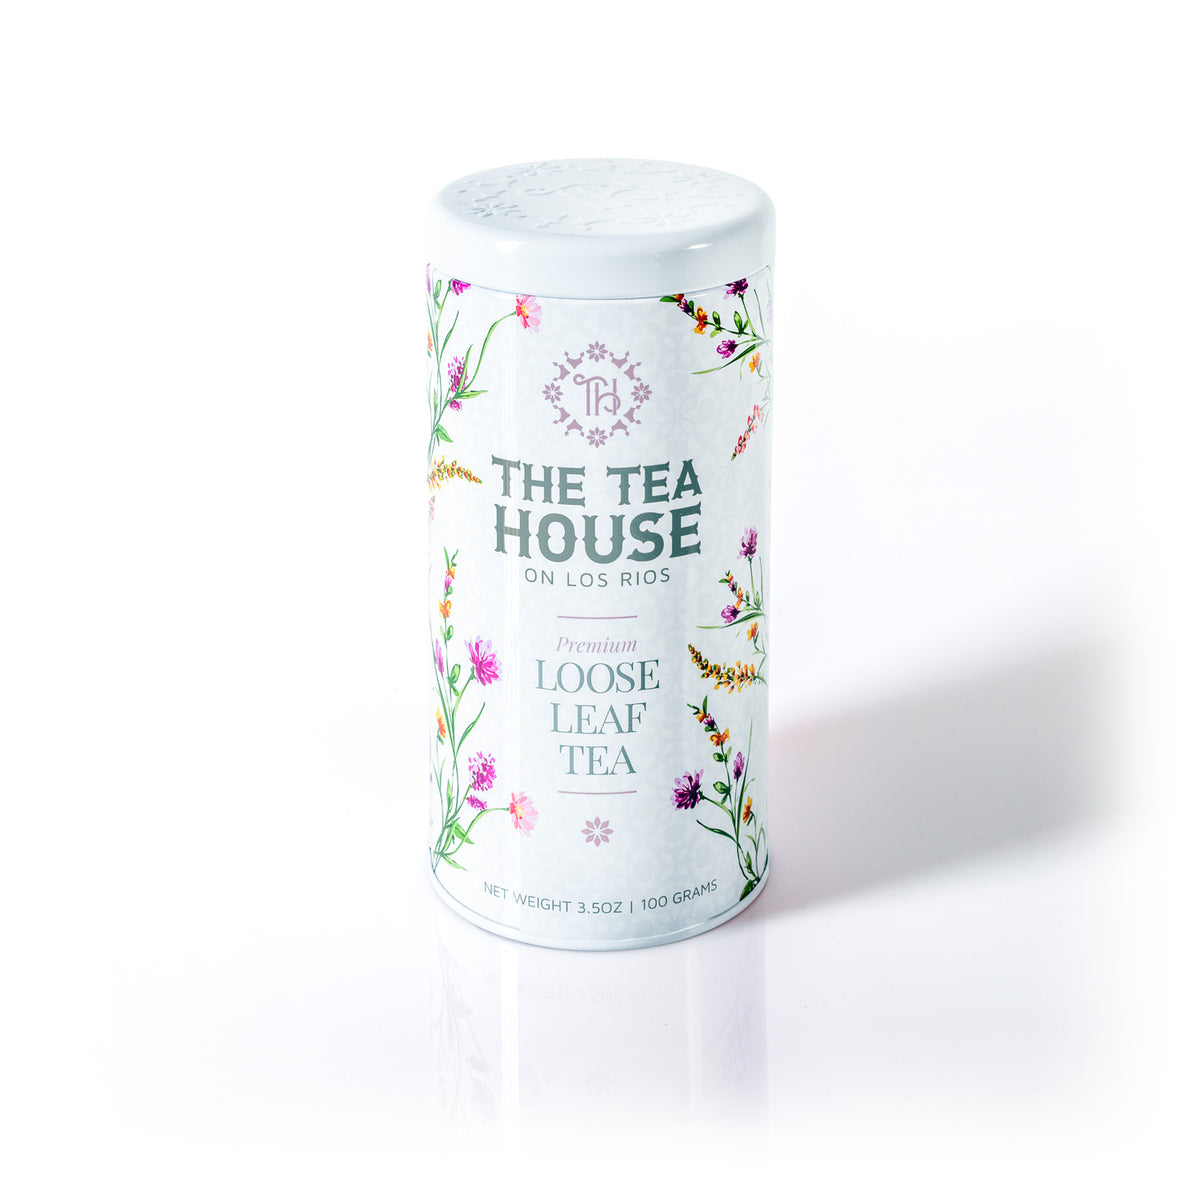 The Tea House on Los Rios introduces a NEW 100g Loose Leaf Tea Tin